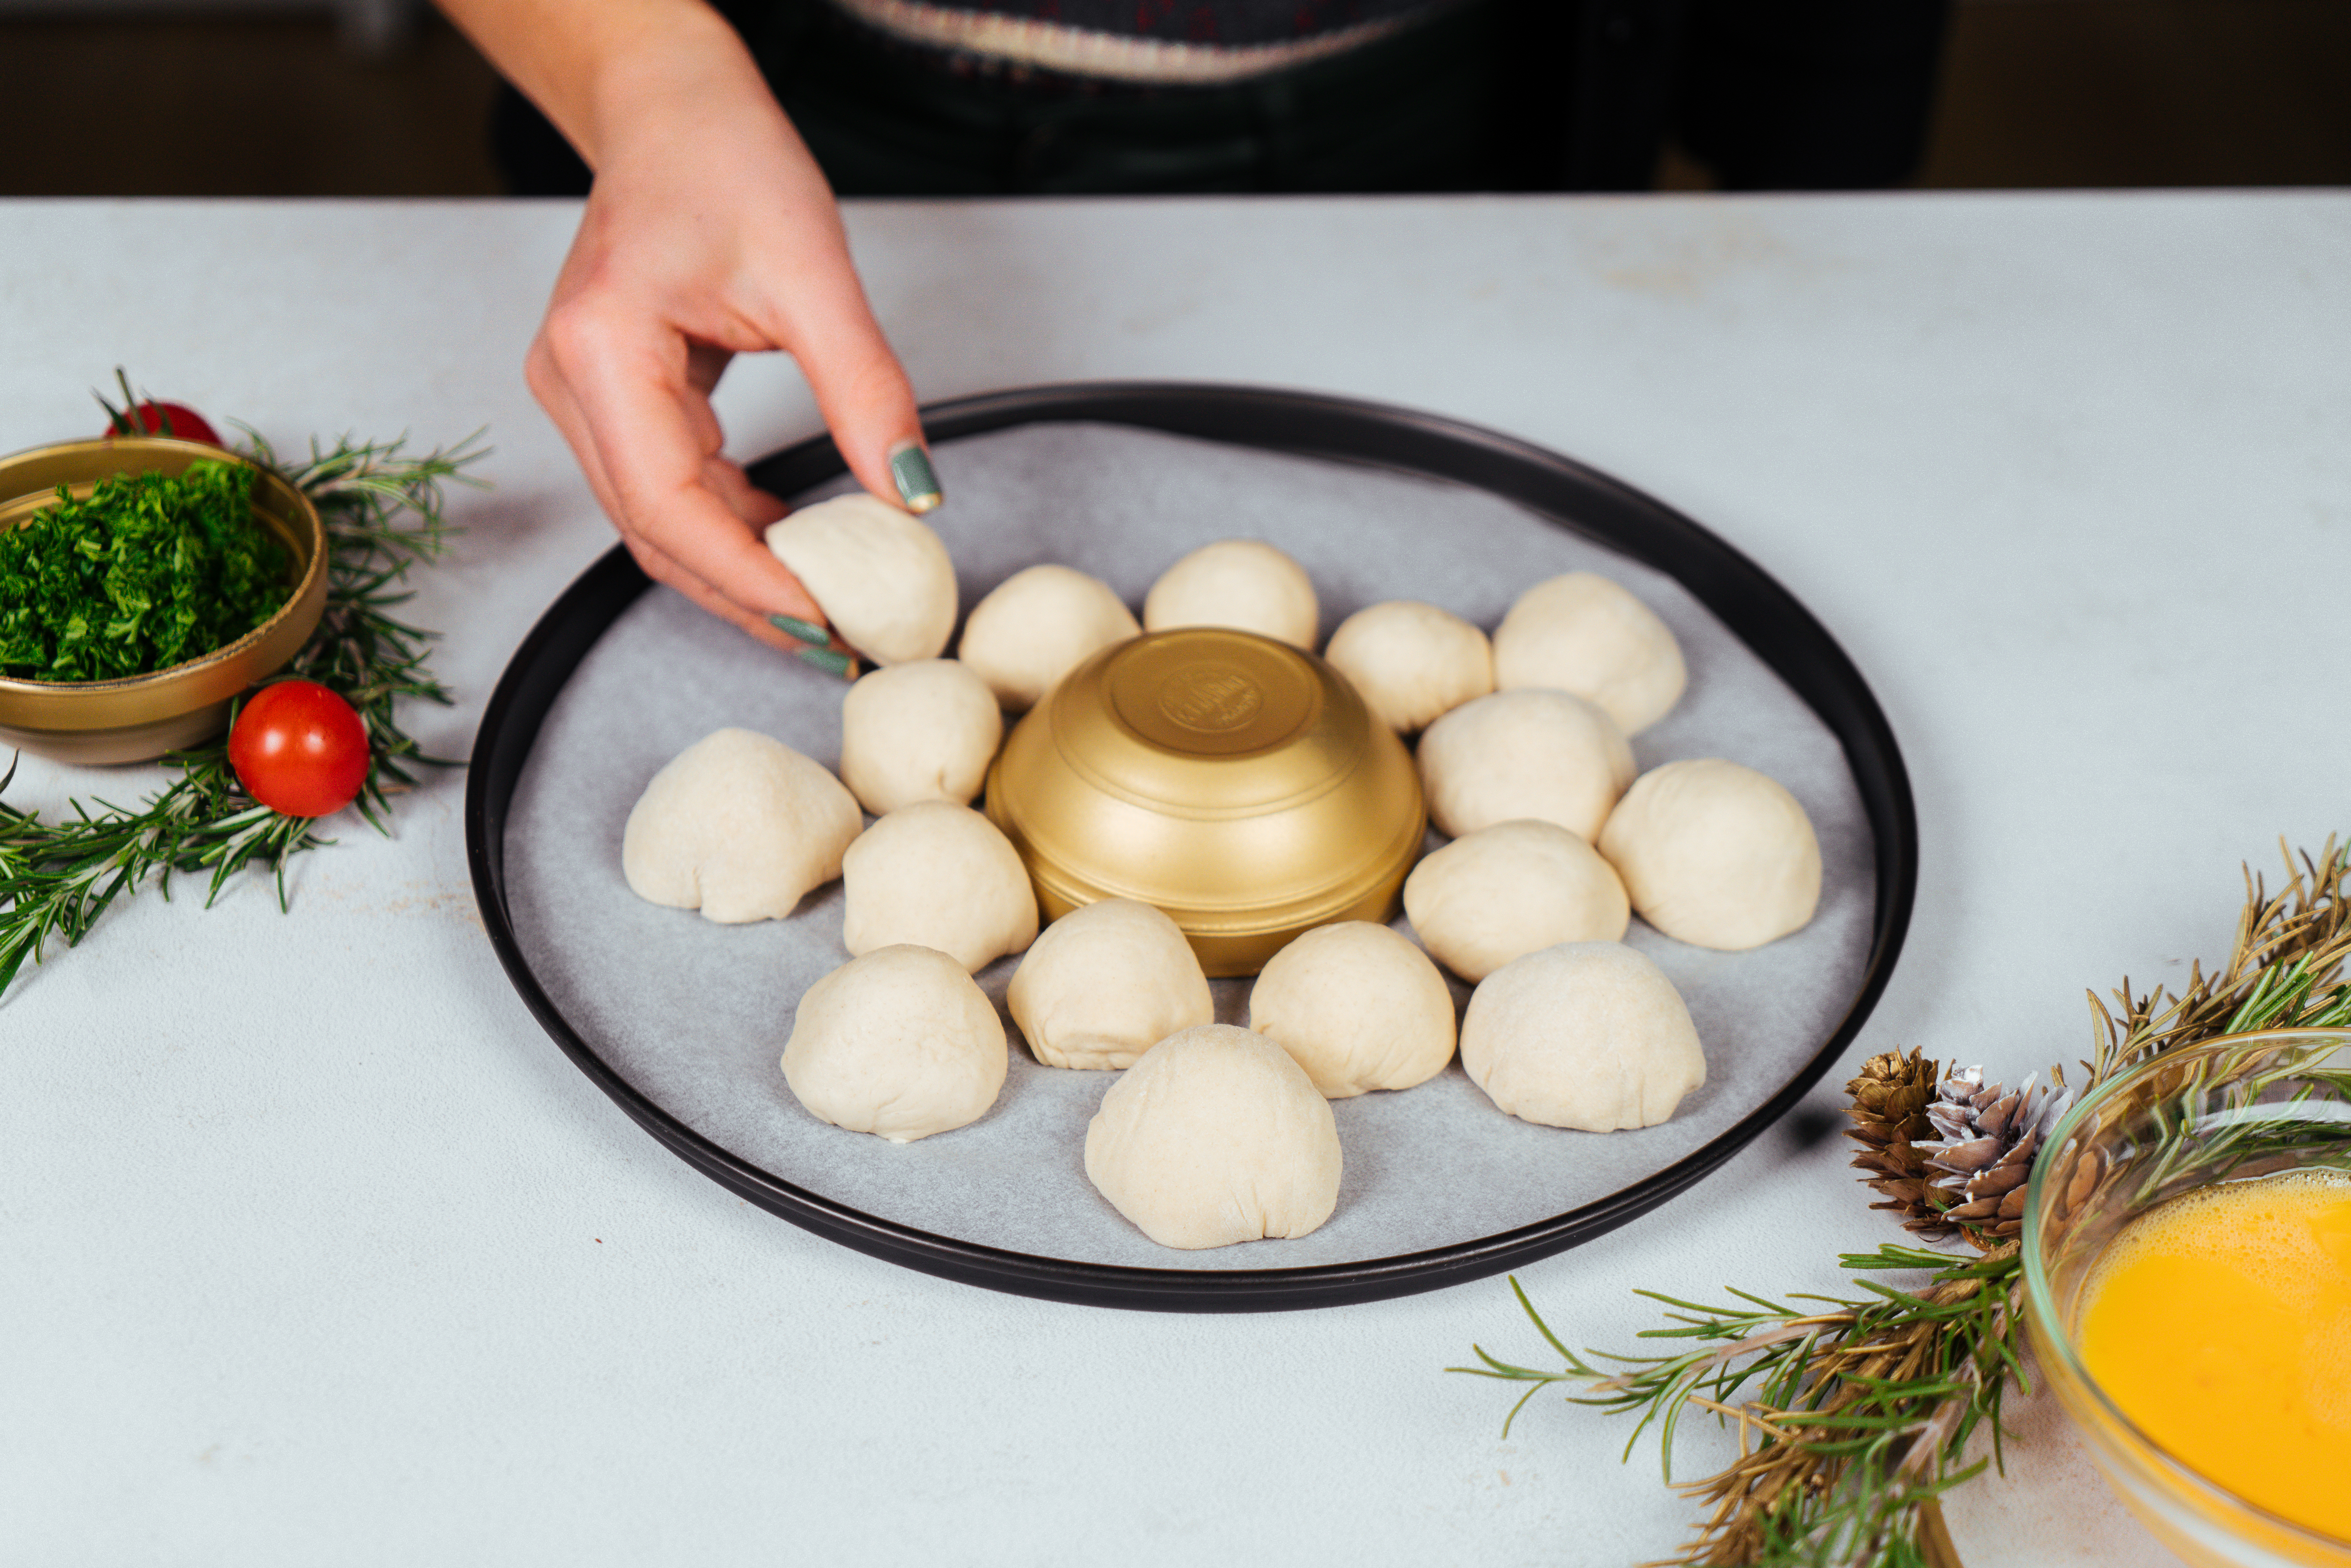 como preparar un pan de navidad en forma de corona paso a paso, mini panes de hojaldre llenos de mozzarella, ideas para regalar 